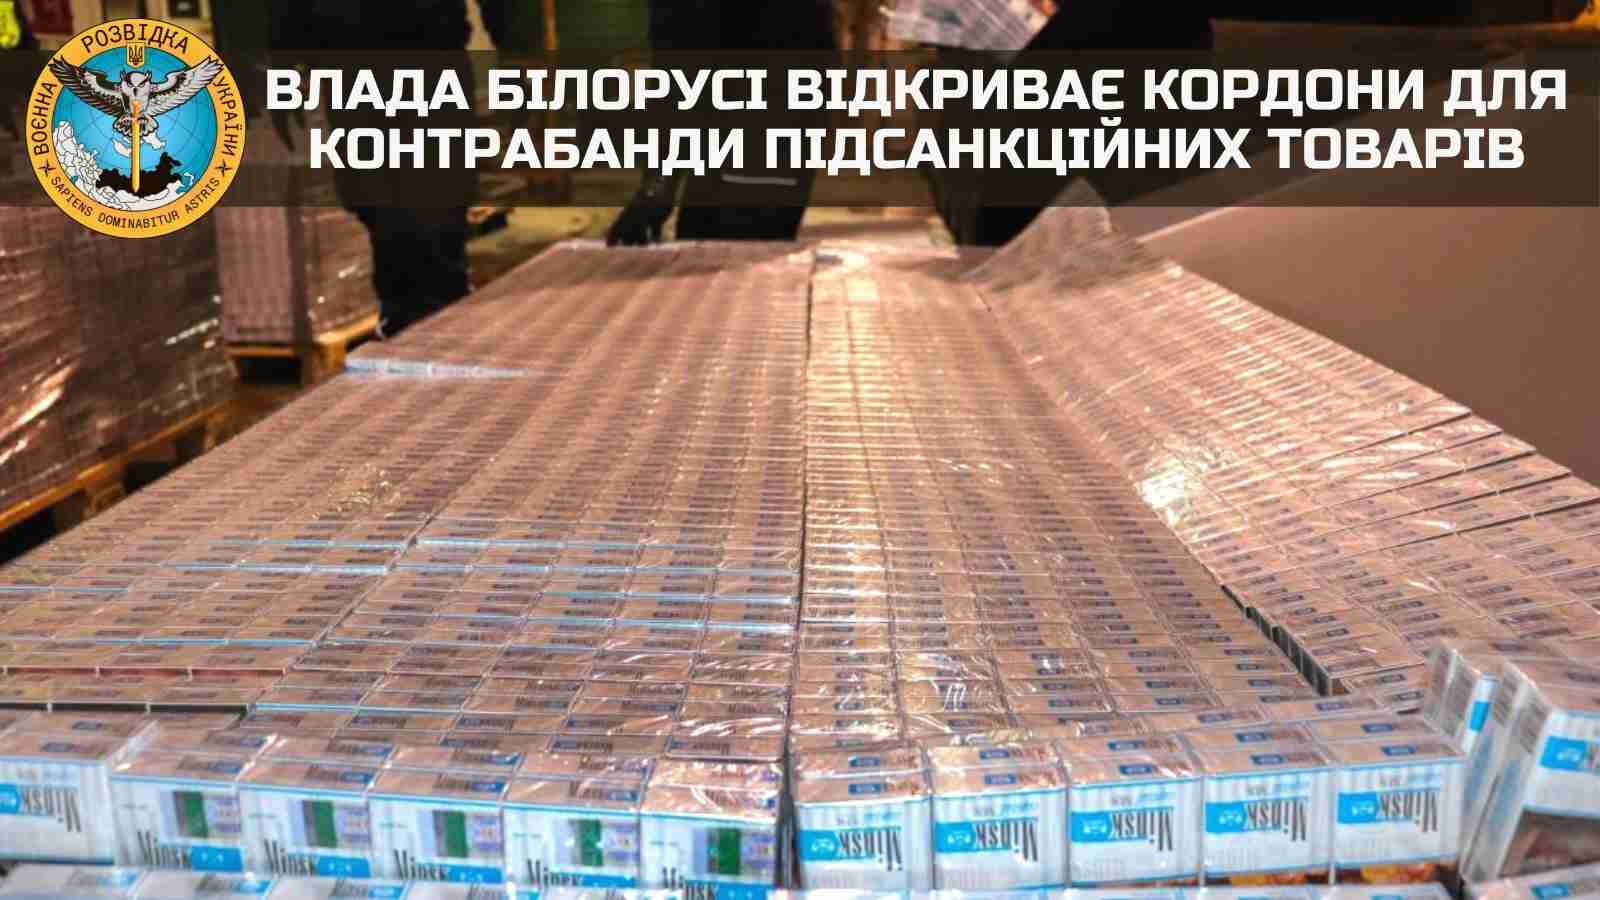 Влада білорусі відкриває кордони для контрабанди підсанкційних товарів - розвідка